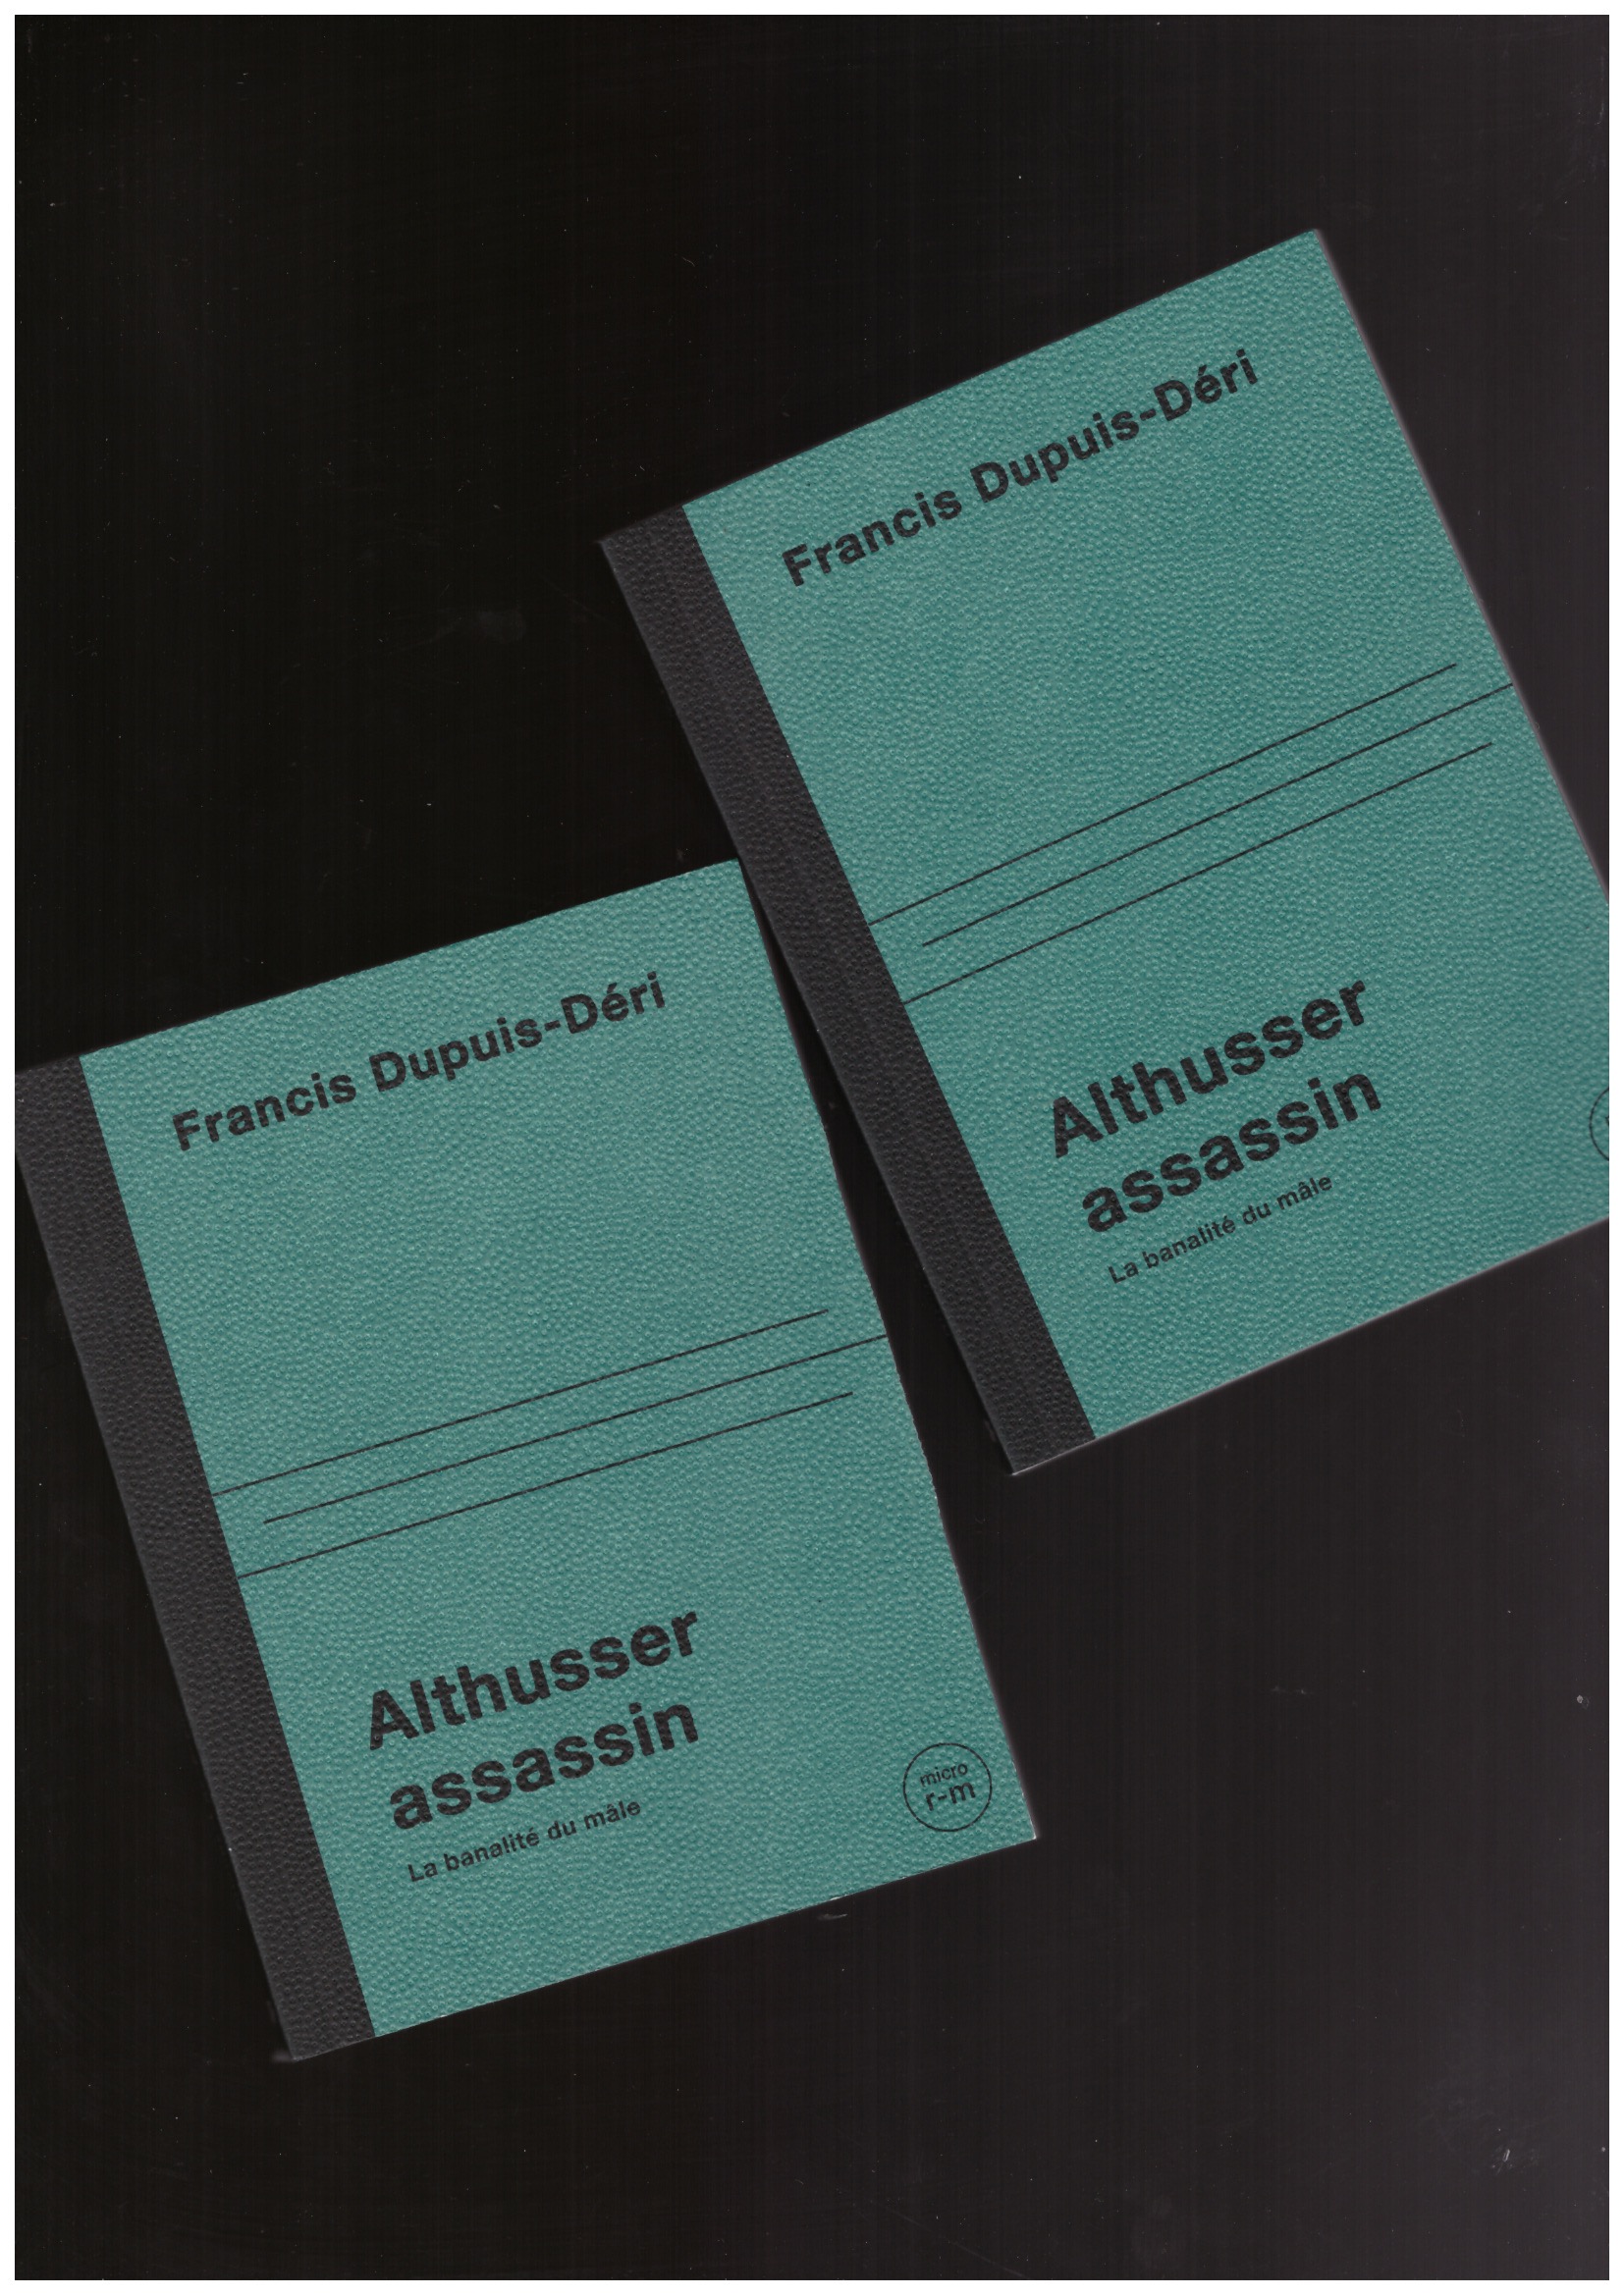 DUPUIS-DERI, Francis - Althusser Assassin. La banalité du mâle